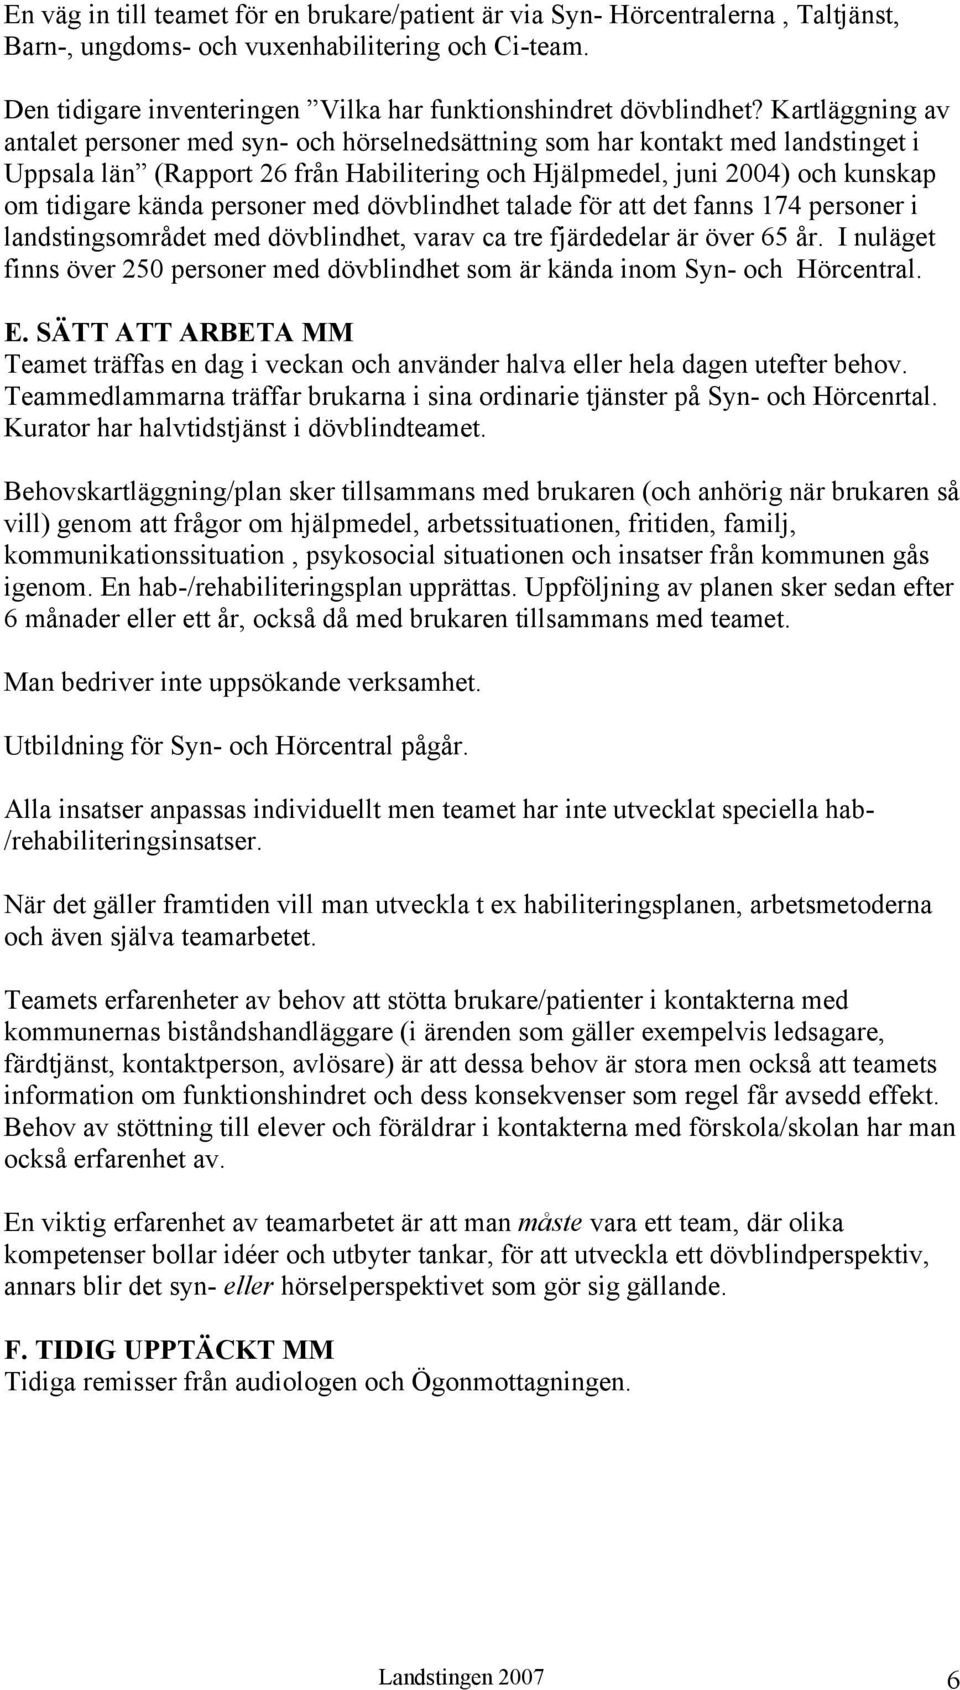 Kartläggning av antalet personer med syn- och hörselnedsättning som har kontakt med landstinget i Uppsala län (Rapport 26 från Habilitering och Hjälpmedel, juni 2004) och kunskap om tidigare kända